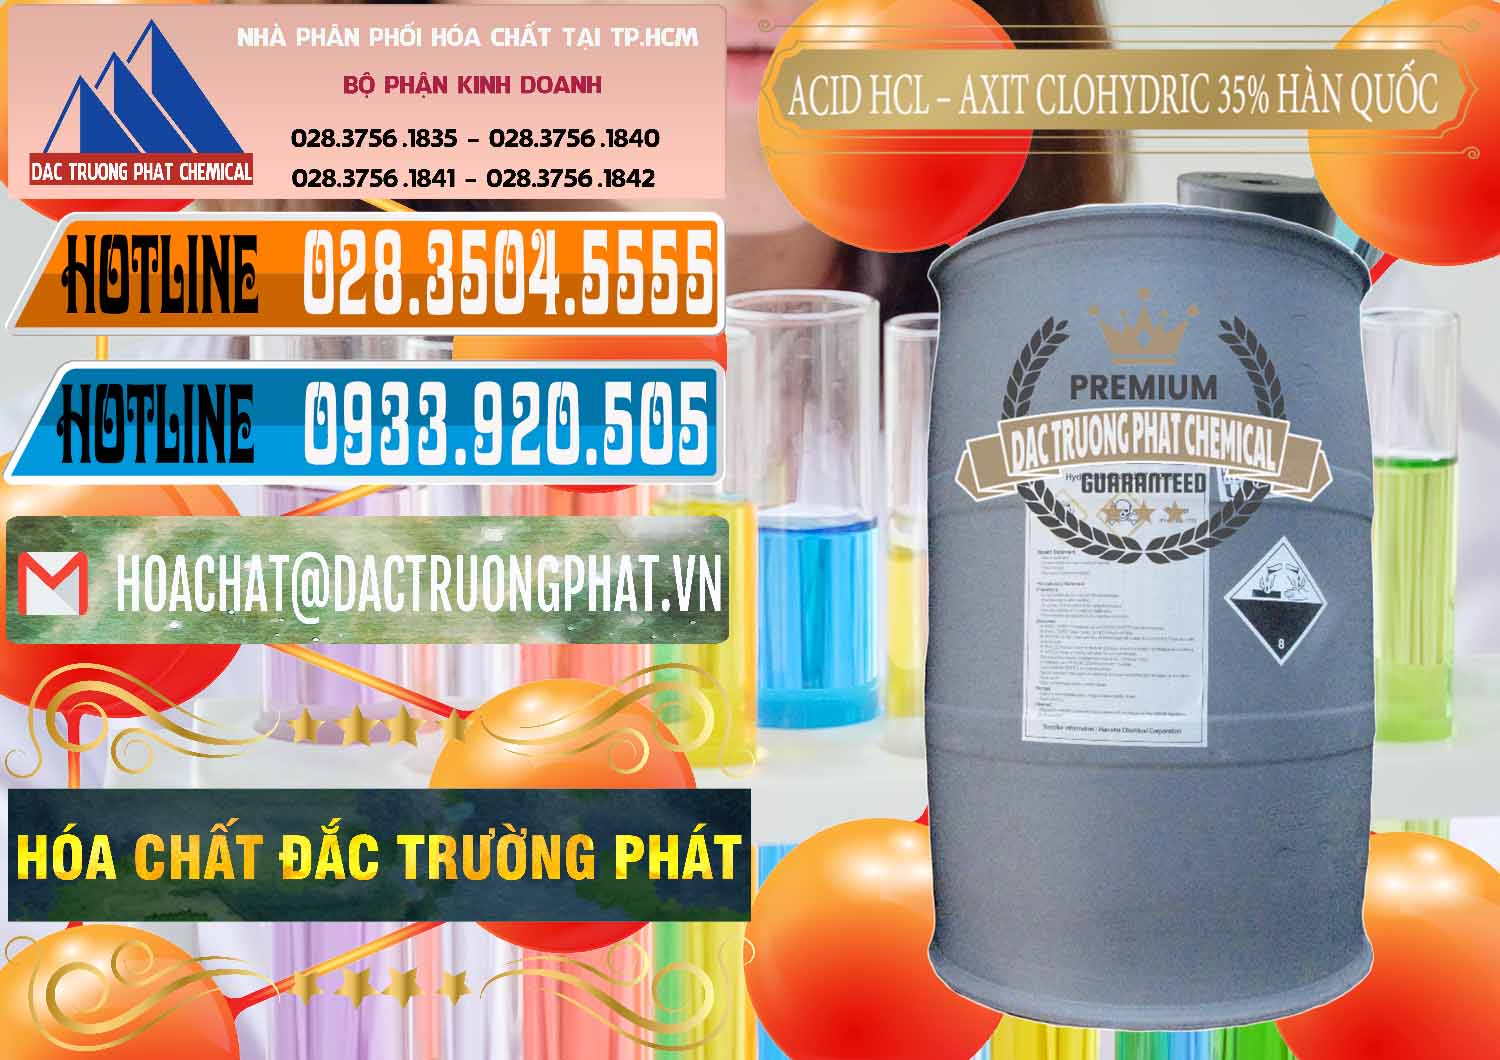 Nơi kinh doanh _ bán Acid HCL - Axit Cohidric 35% Hàn Quốc Korea - 0011 - Cty phân phối & cung cấp hóa chất tại TP.HCM - stmp.net